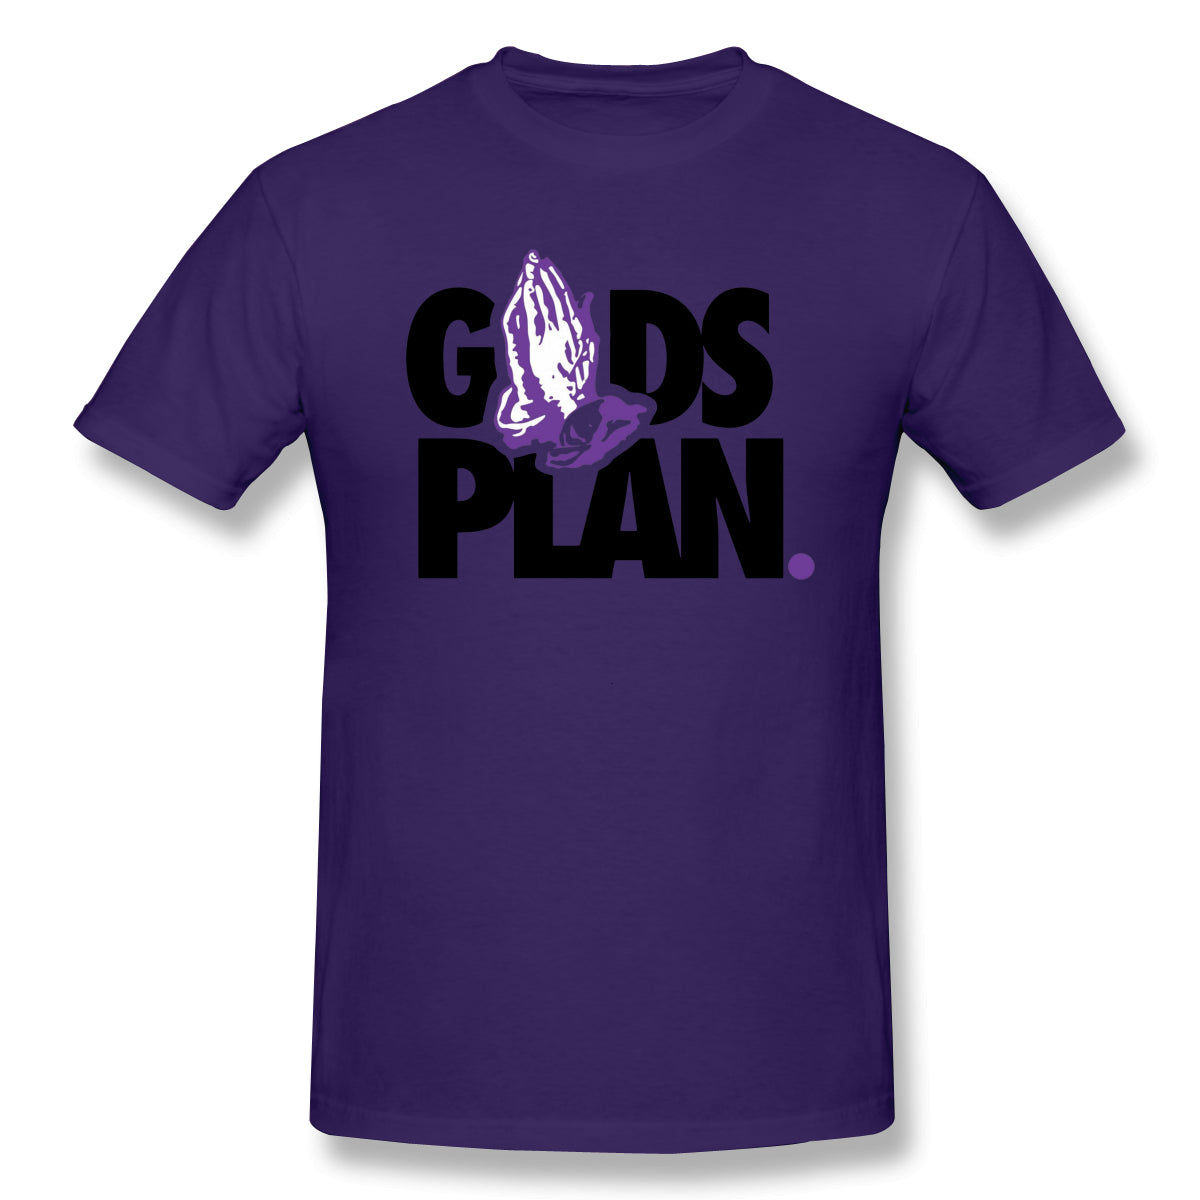 Air Jordan 1 Court Purple 1s Sneaker Tee Goods Plan Short Sleeve t Shirt For Man